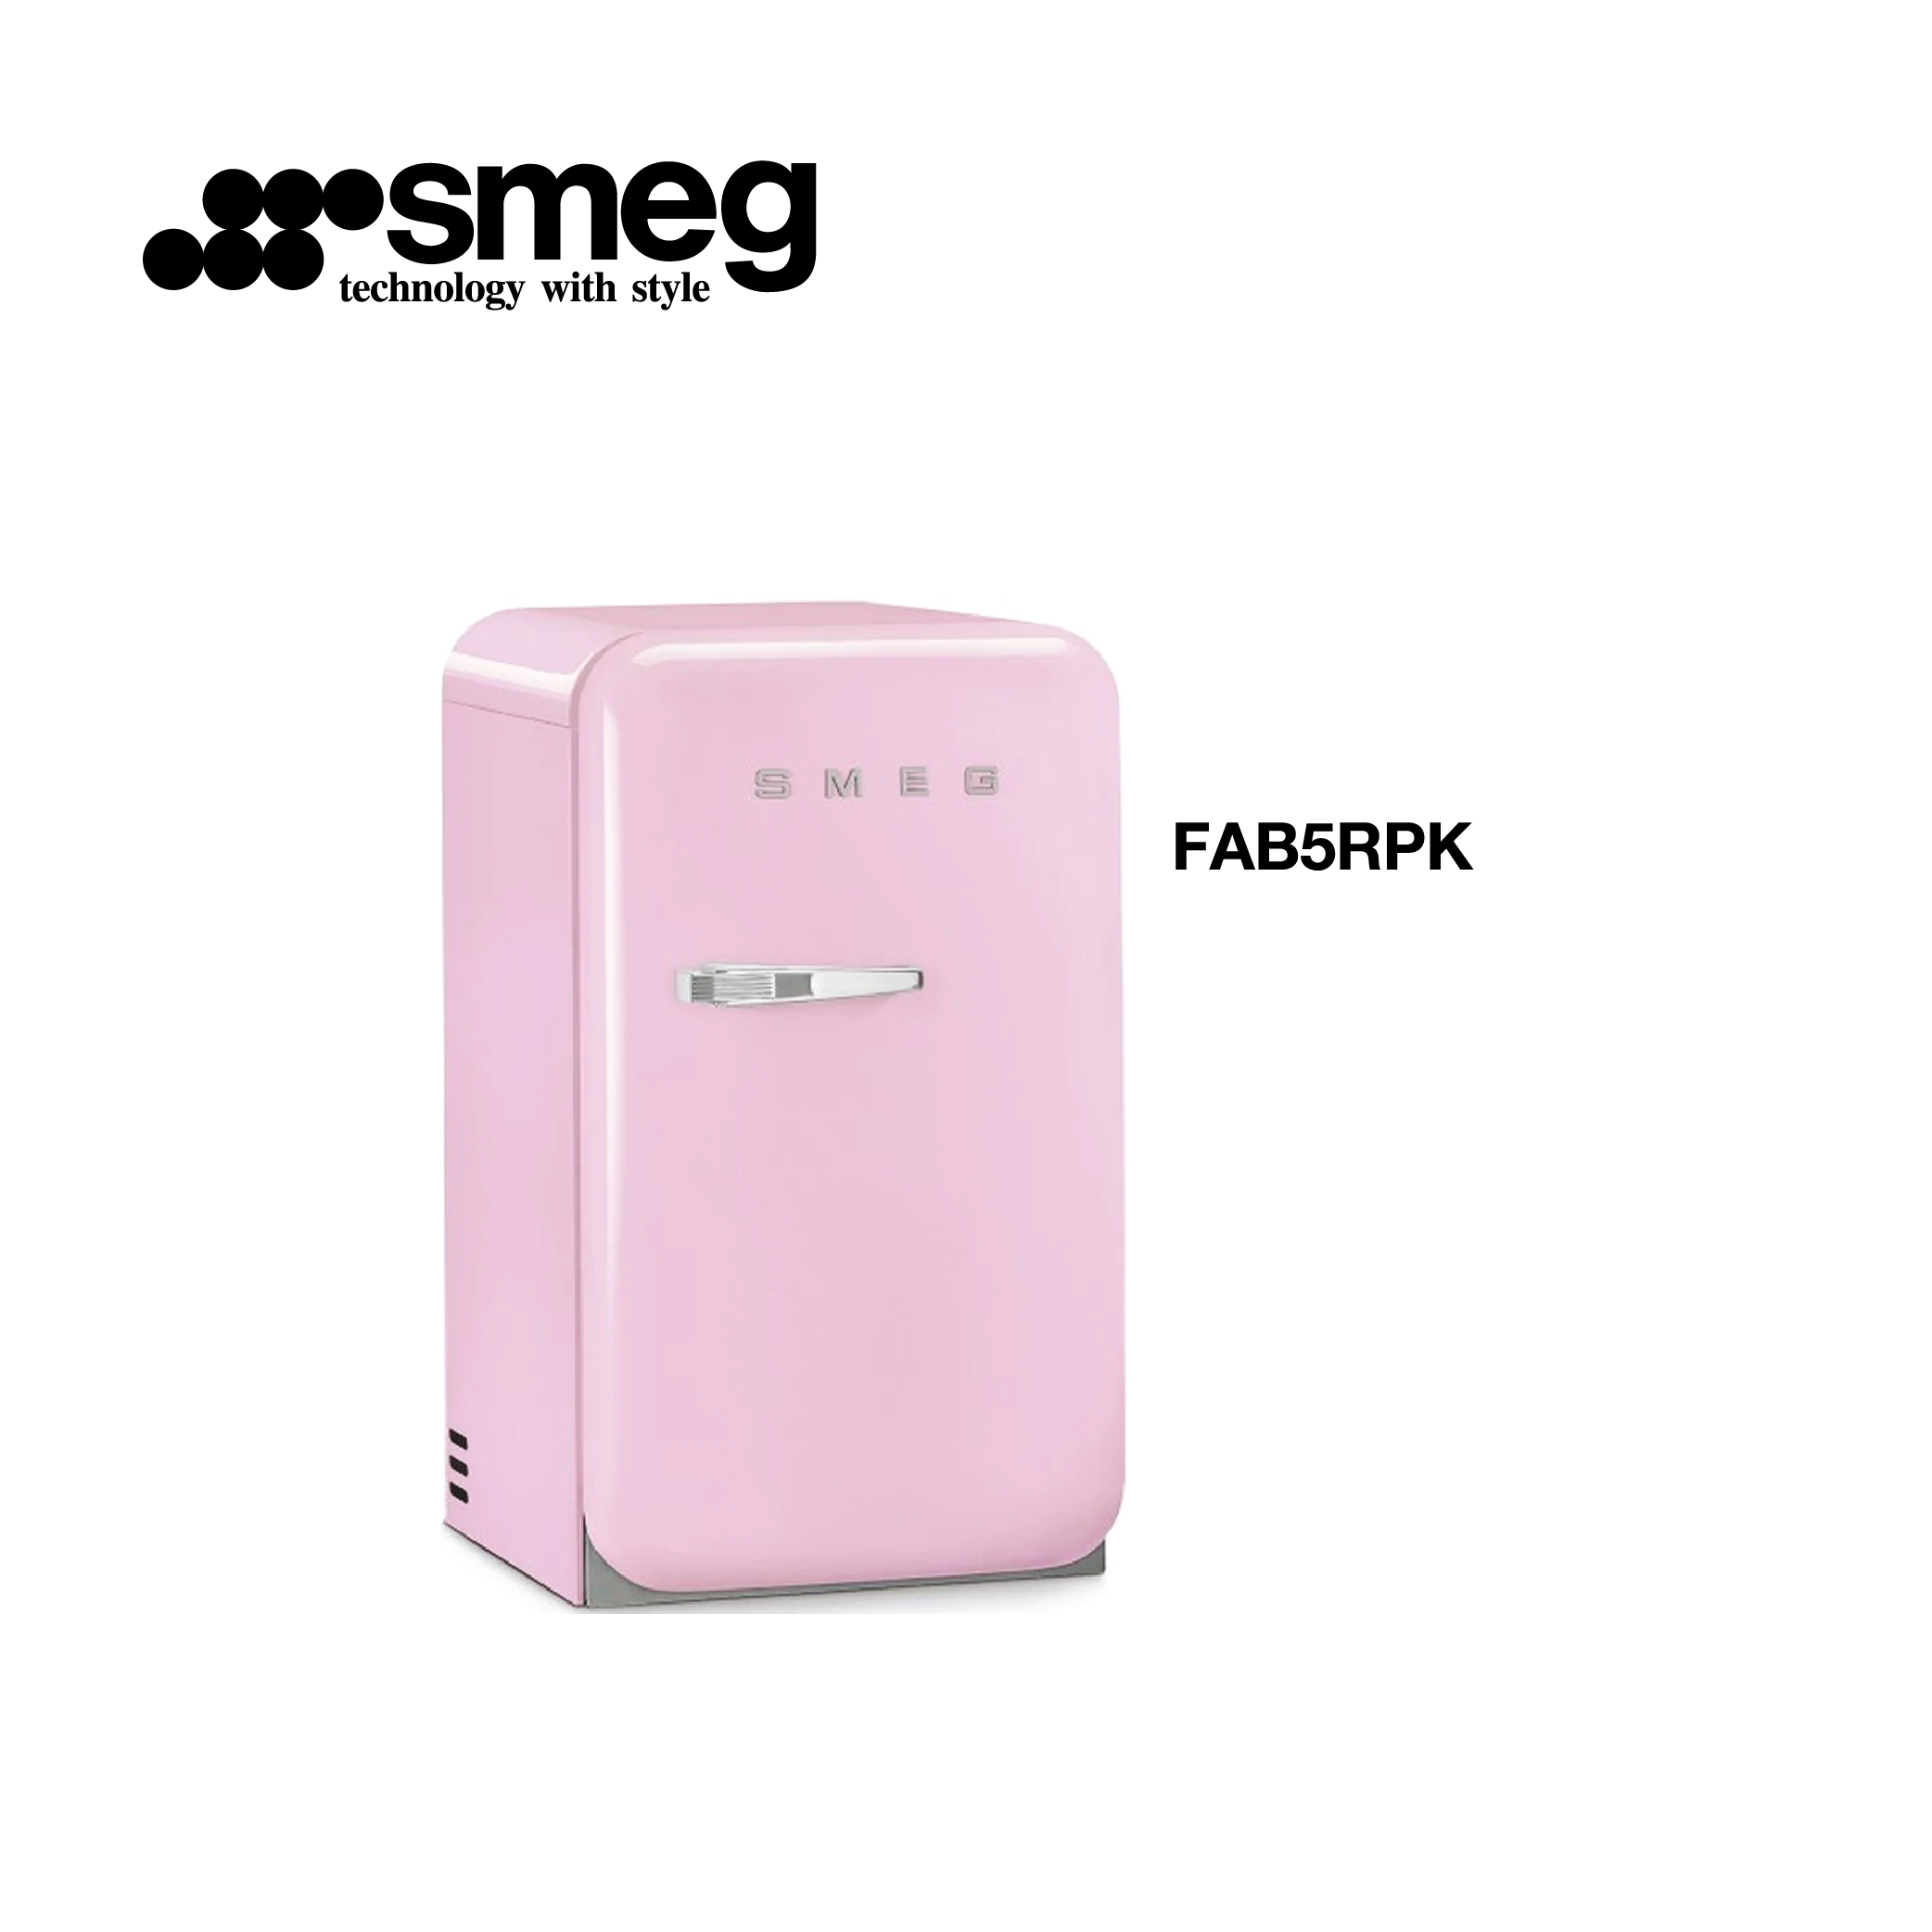 minibar refrigerateur congelateur couleur Rose style vintage FAB5RPK